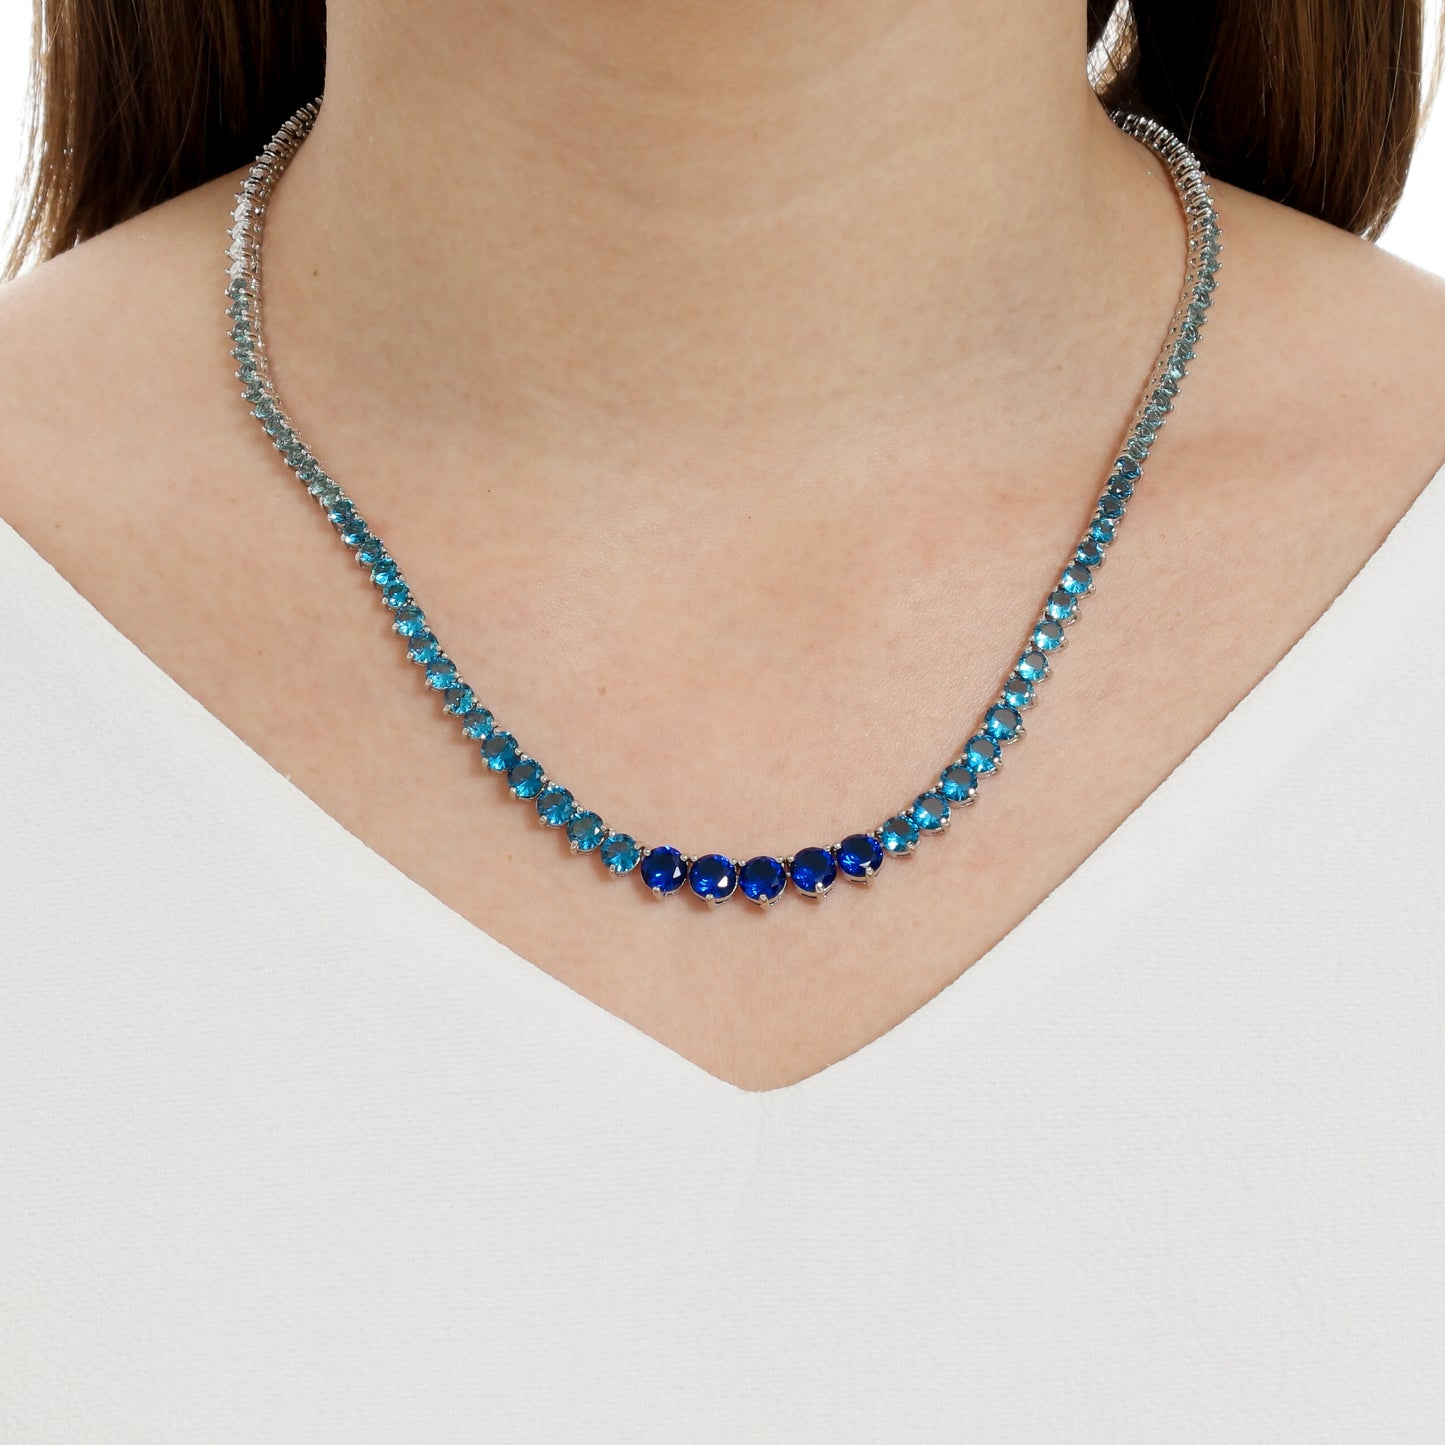 Corrente Riveira Azul e Branca | Citrine Concept Jewelry